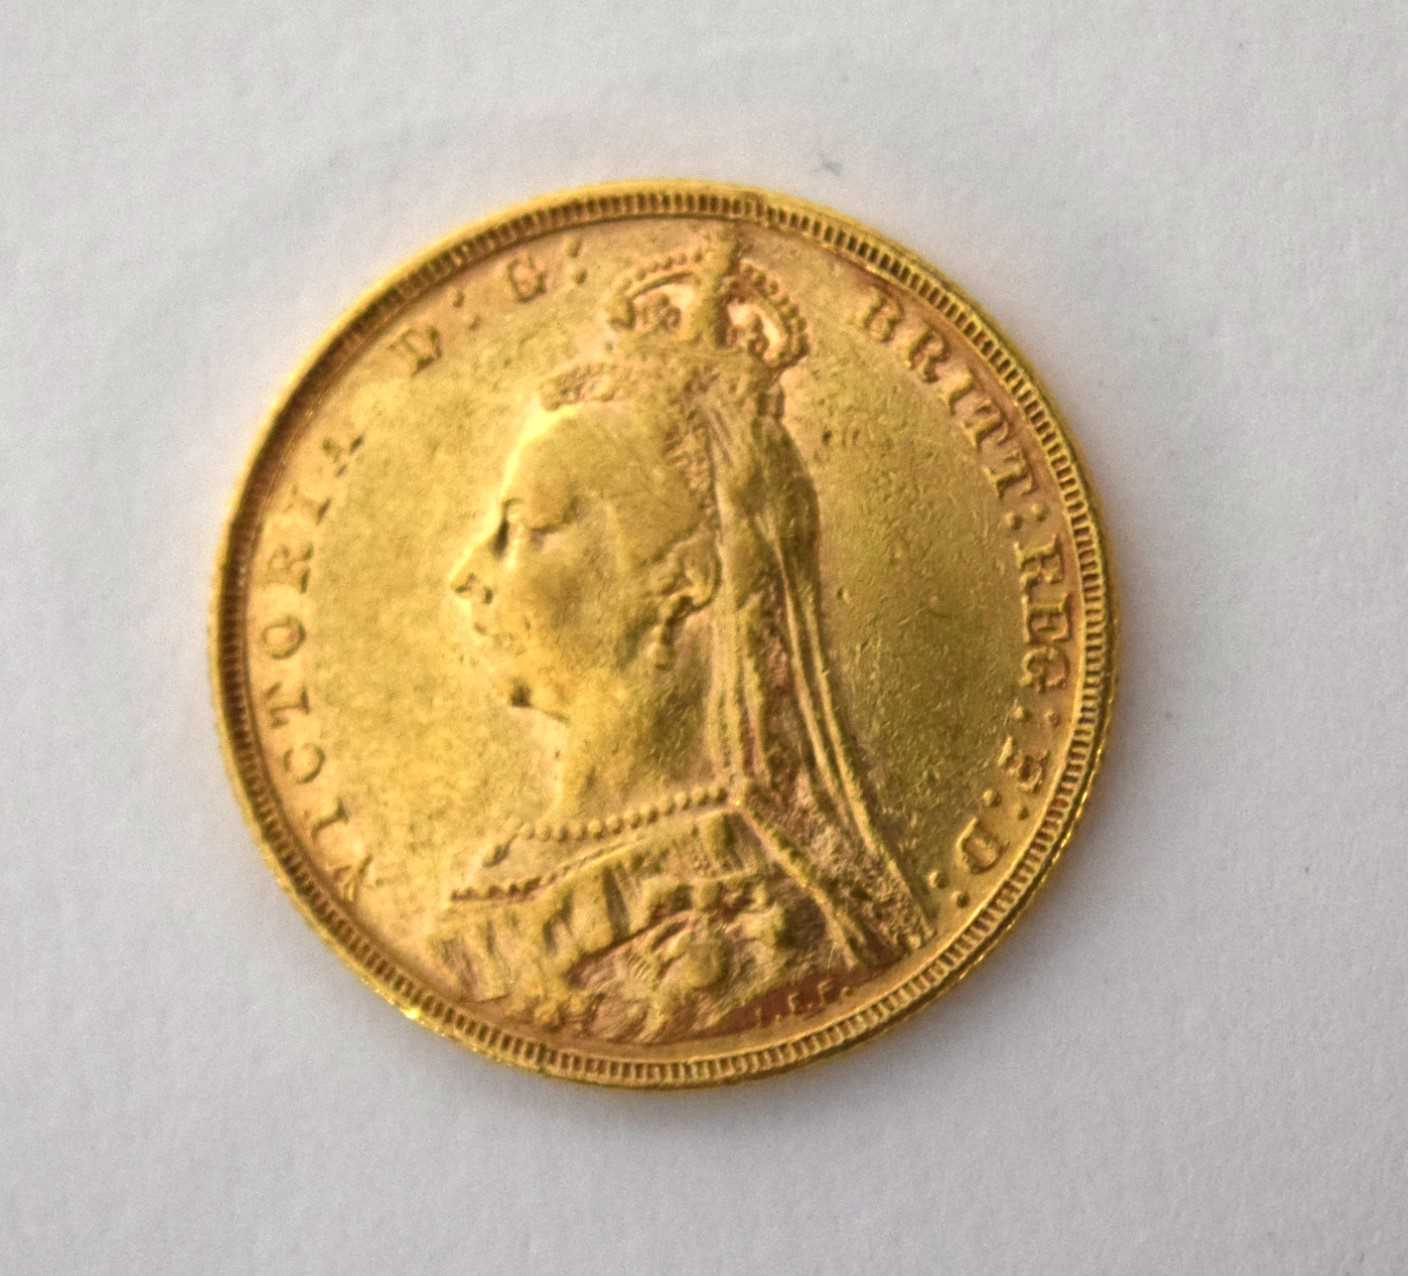 Queen Victoria 1892 gold sovereign